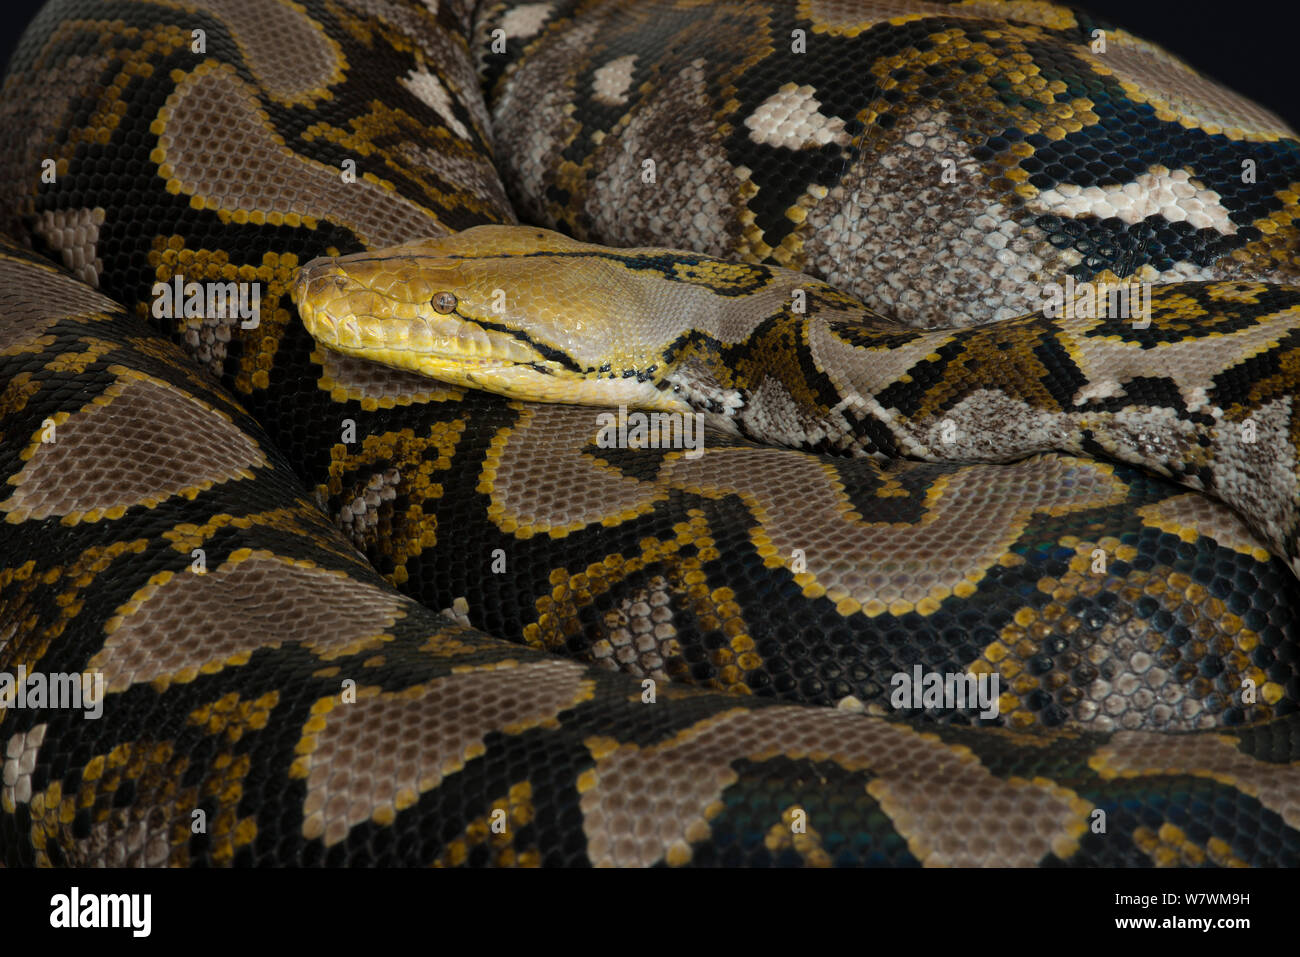 Python réticulé (Malayopython reticulatus) captive, originaire d'Asie du Sud Est. Banque D'Images